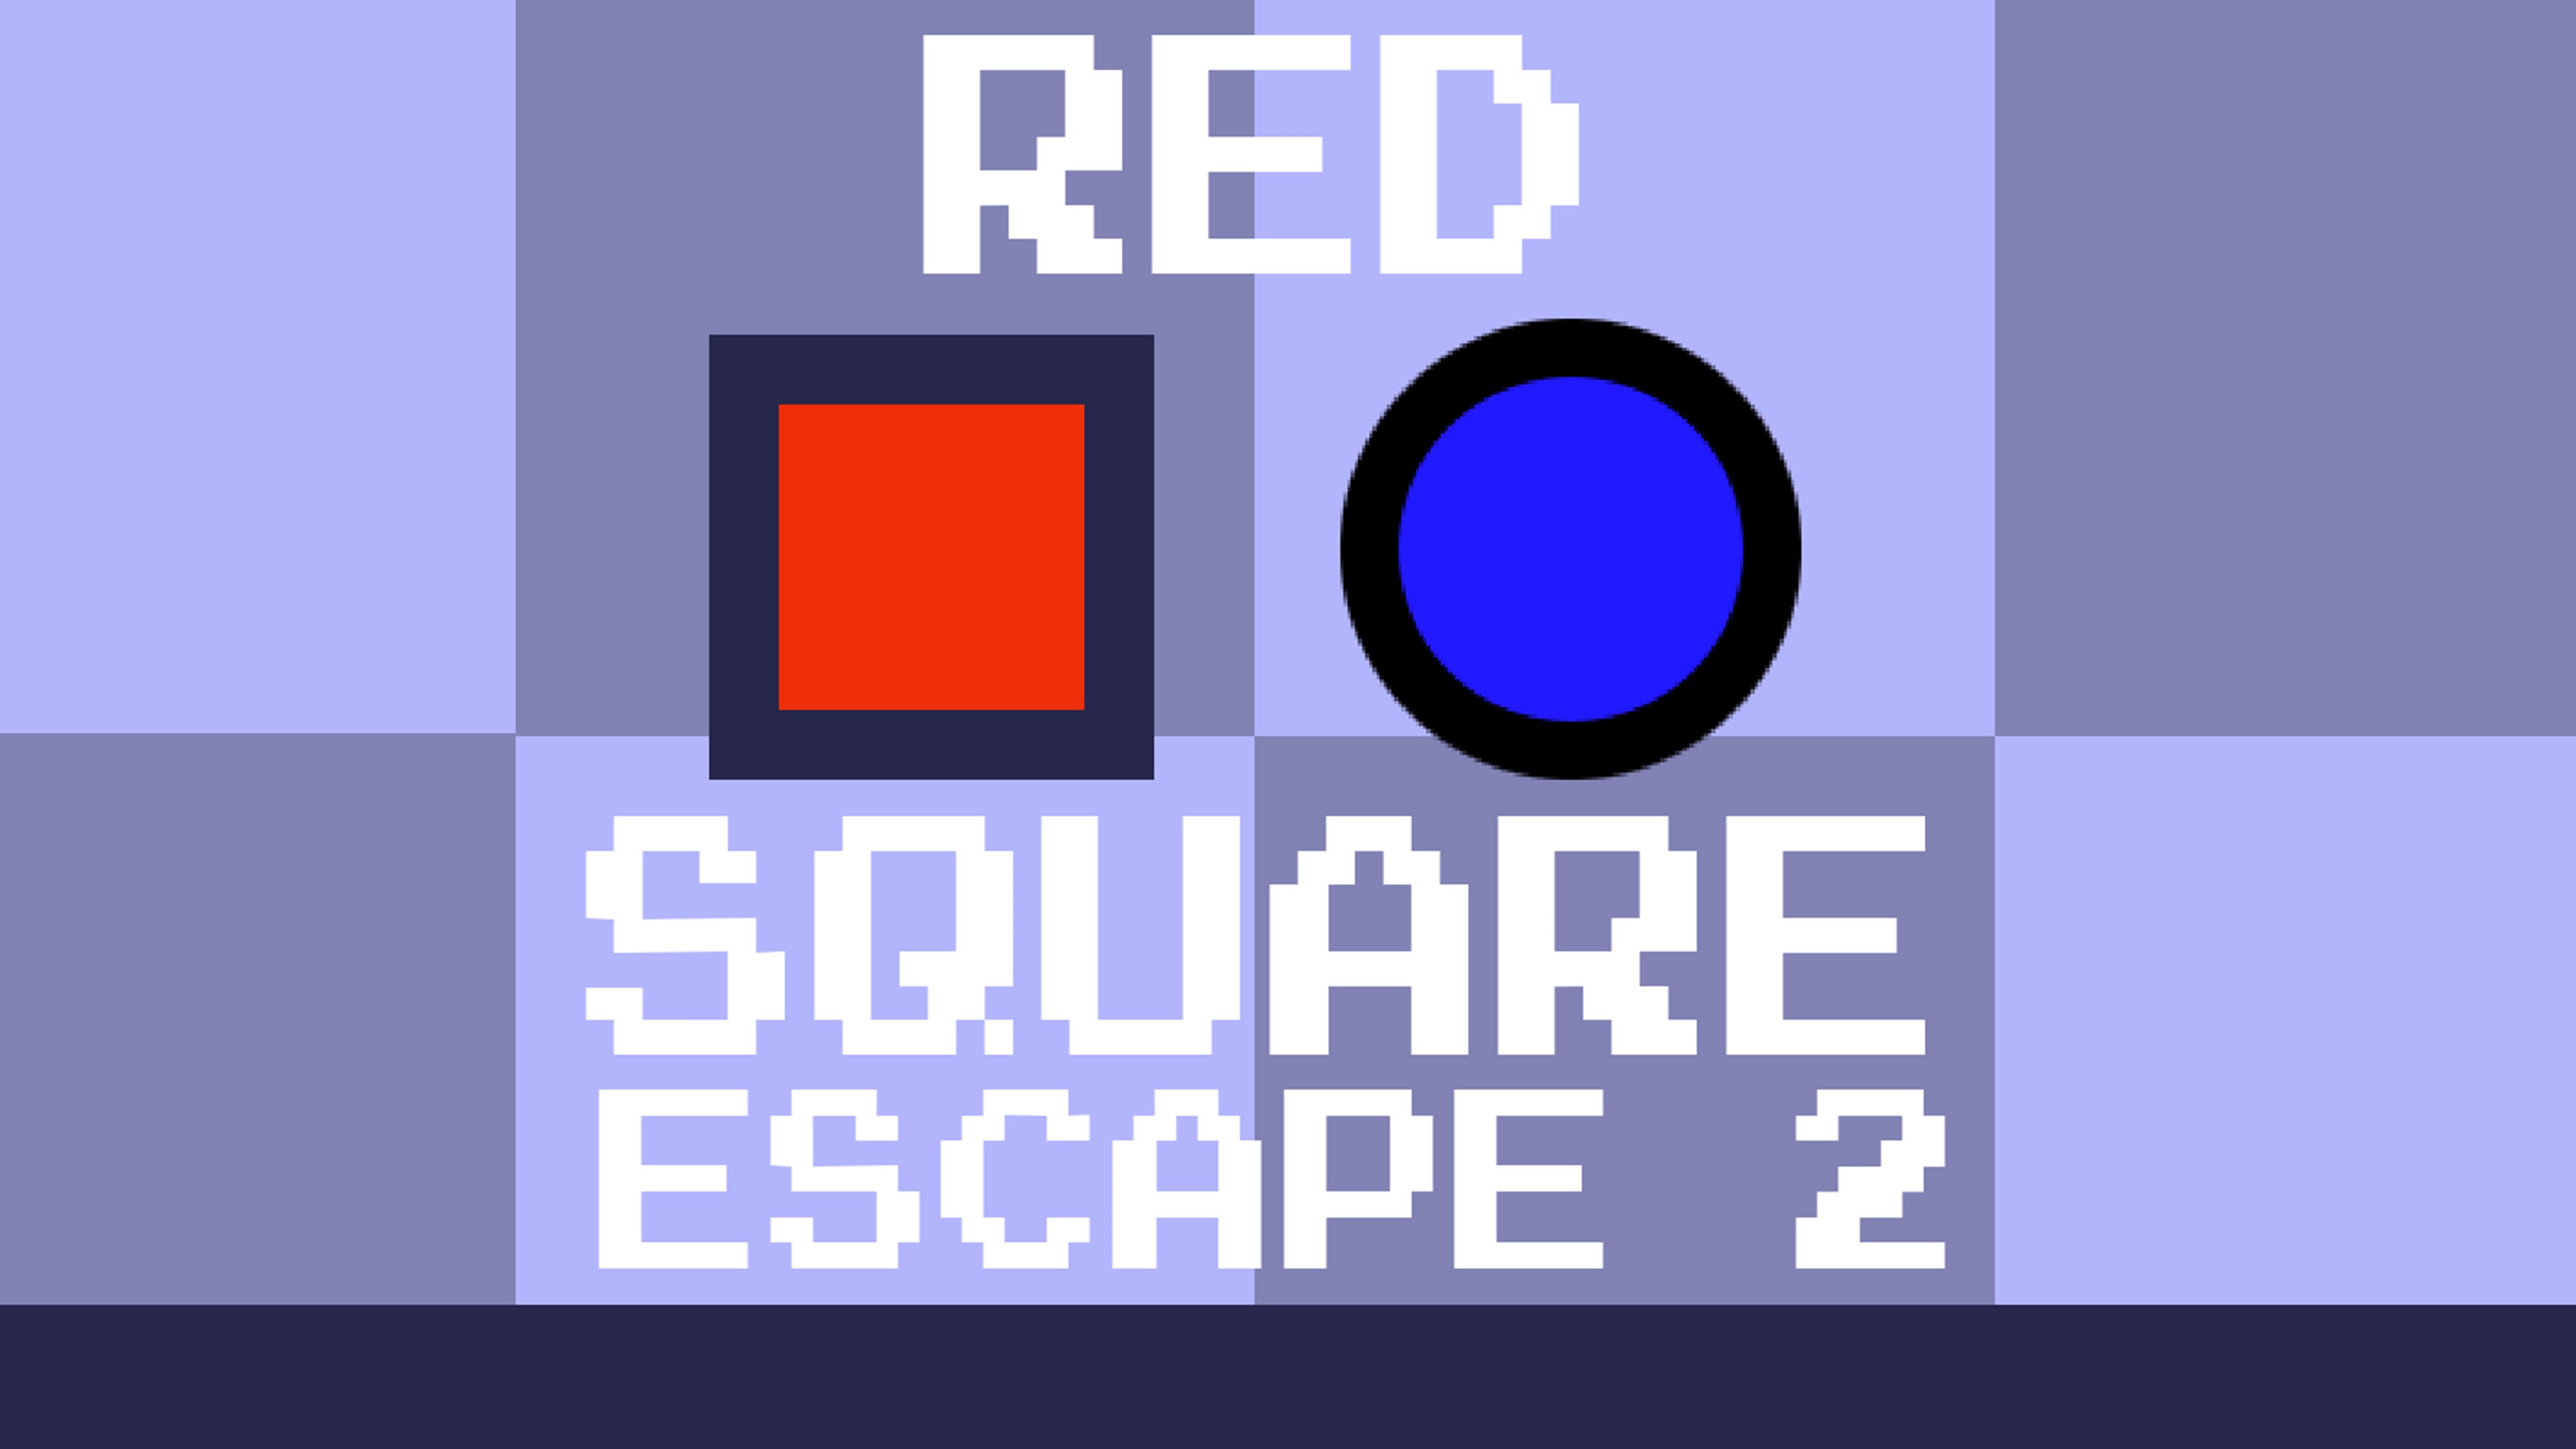 Red Square Escape 2